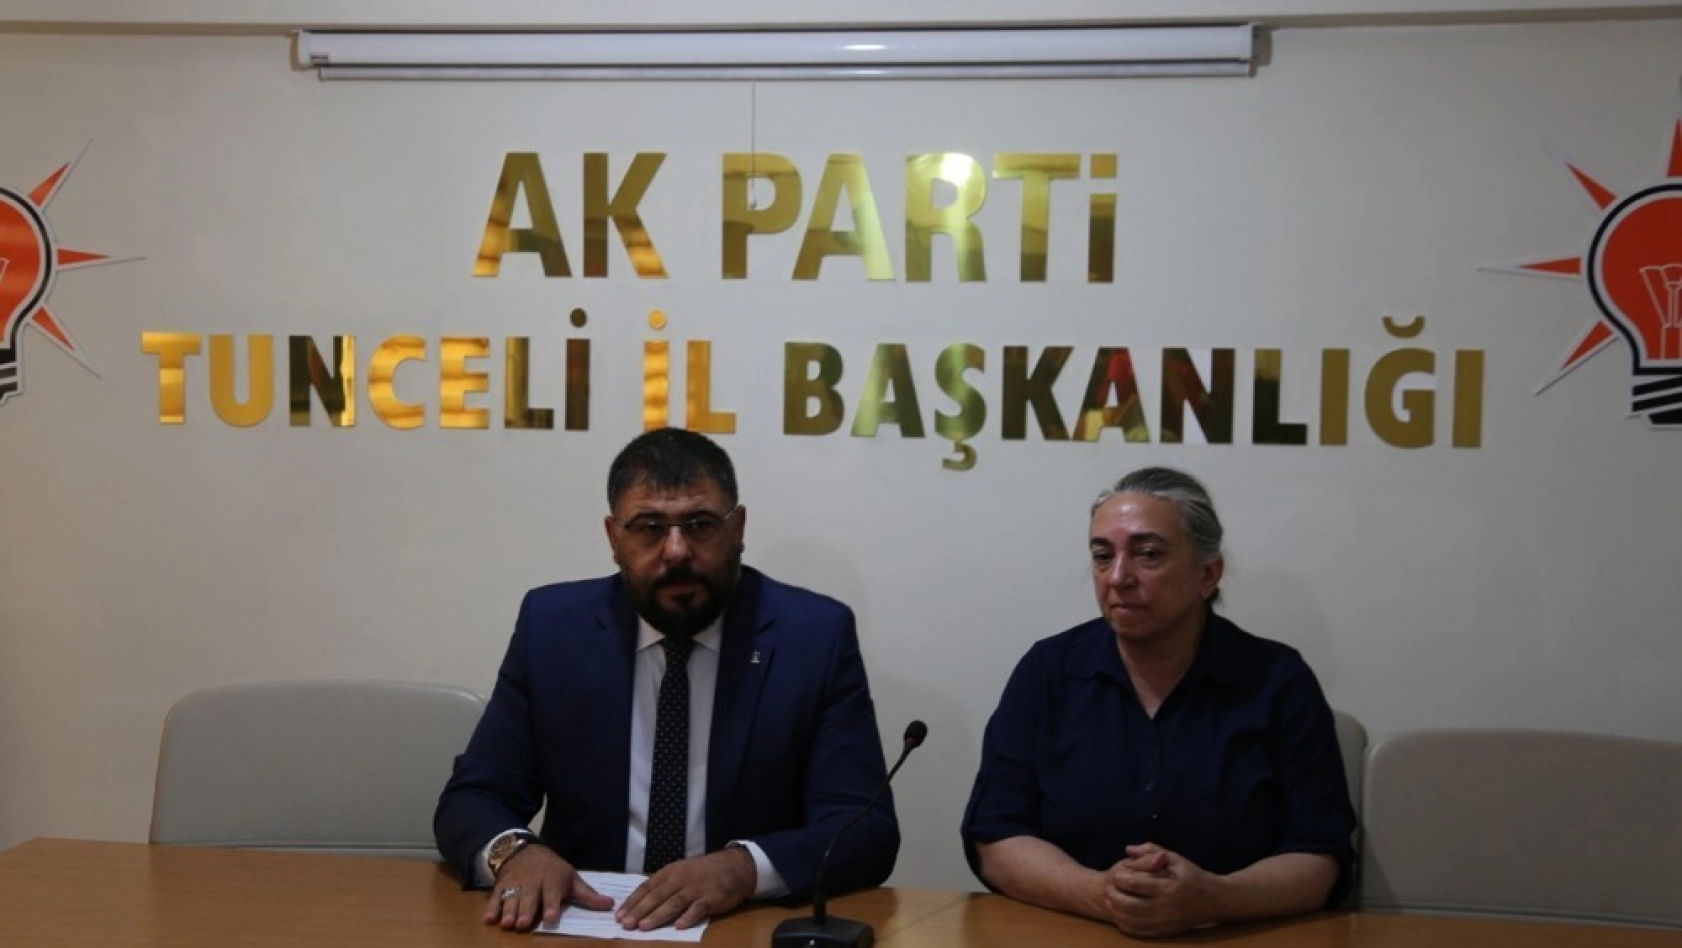 AK Parti Tunceli İl Başkanlığından kongre açıklaması 